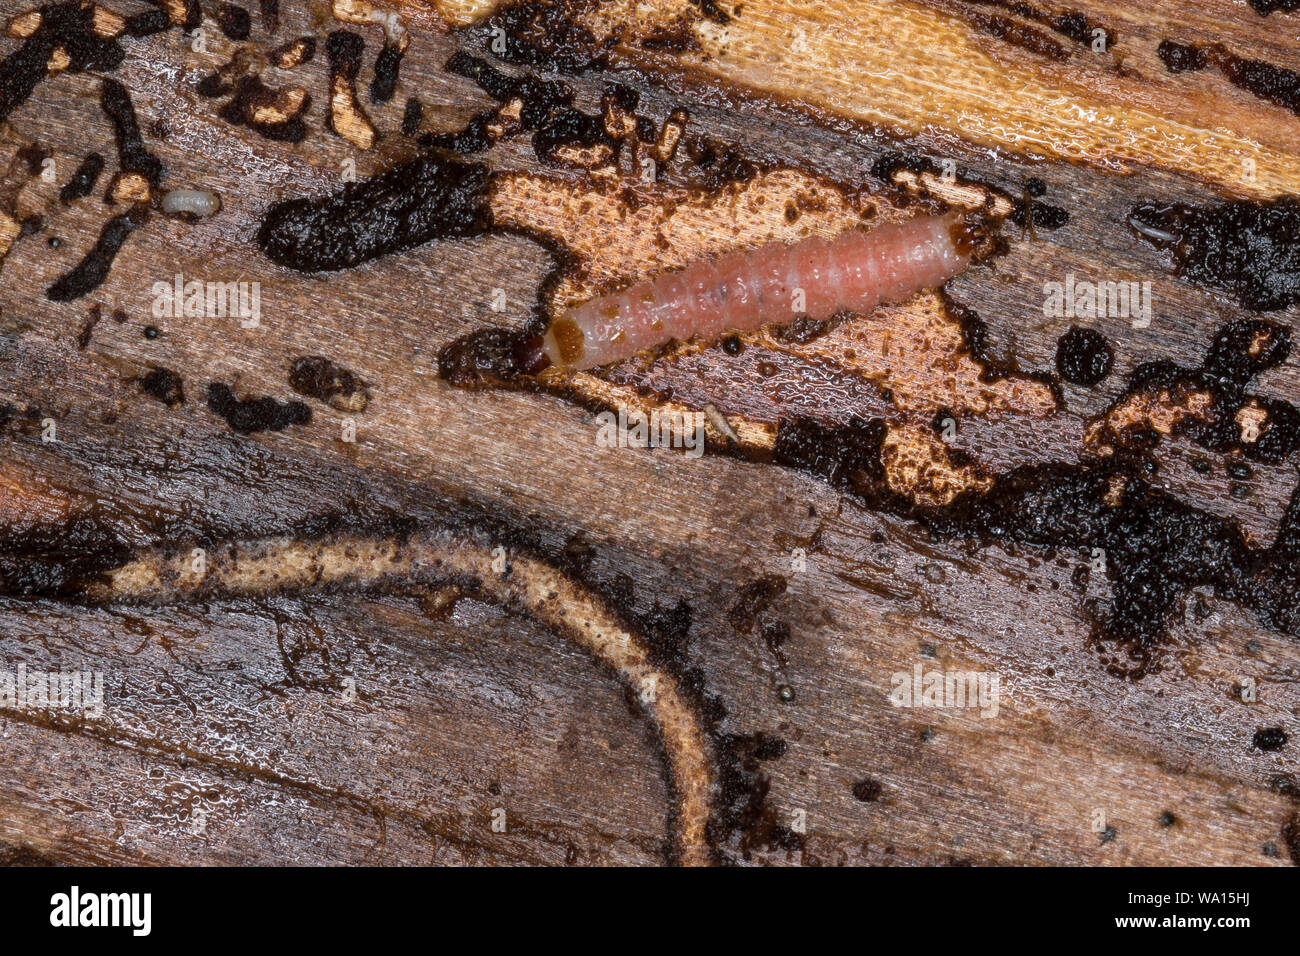 Ameisenbuntkäfer, Ameisenbunt-Käfer, Larve unter der Rinde einer Fichte, Gemeiner Ameisenbuntkäfer, Borkenkäferfresser, Ameisenartiger Buntkäfer, Than Stock Photo